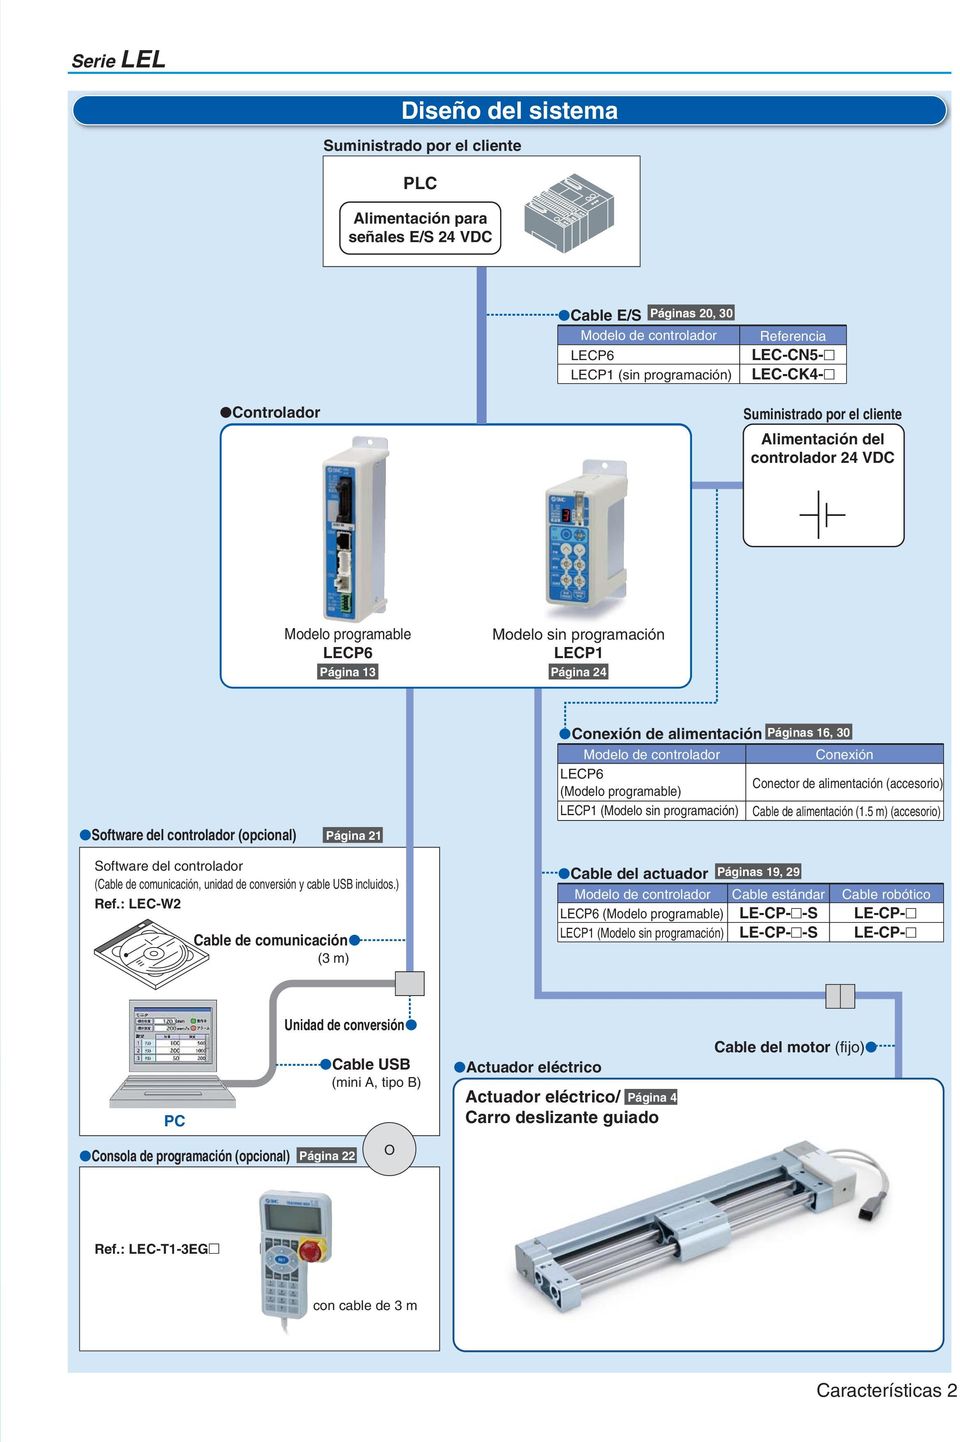 alimentación Páginas 16, 0 Modelo de controlador Conexión Conector de alimentación (accesorio) (Modelo programable) LECP1 (Modelo sin programación) Cable de alimentación (1.